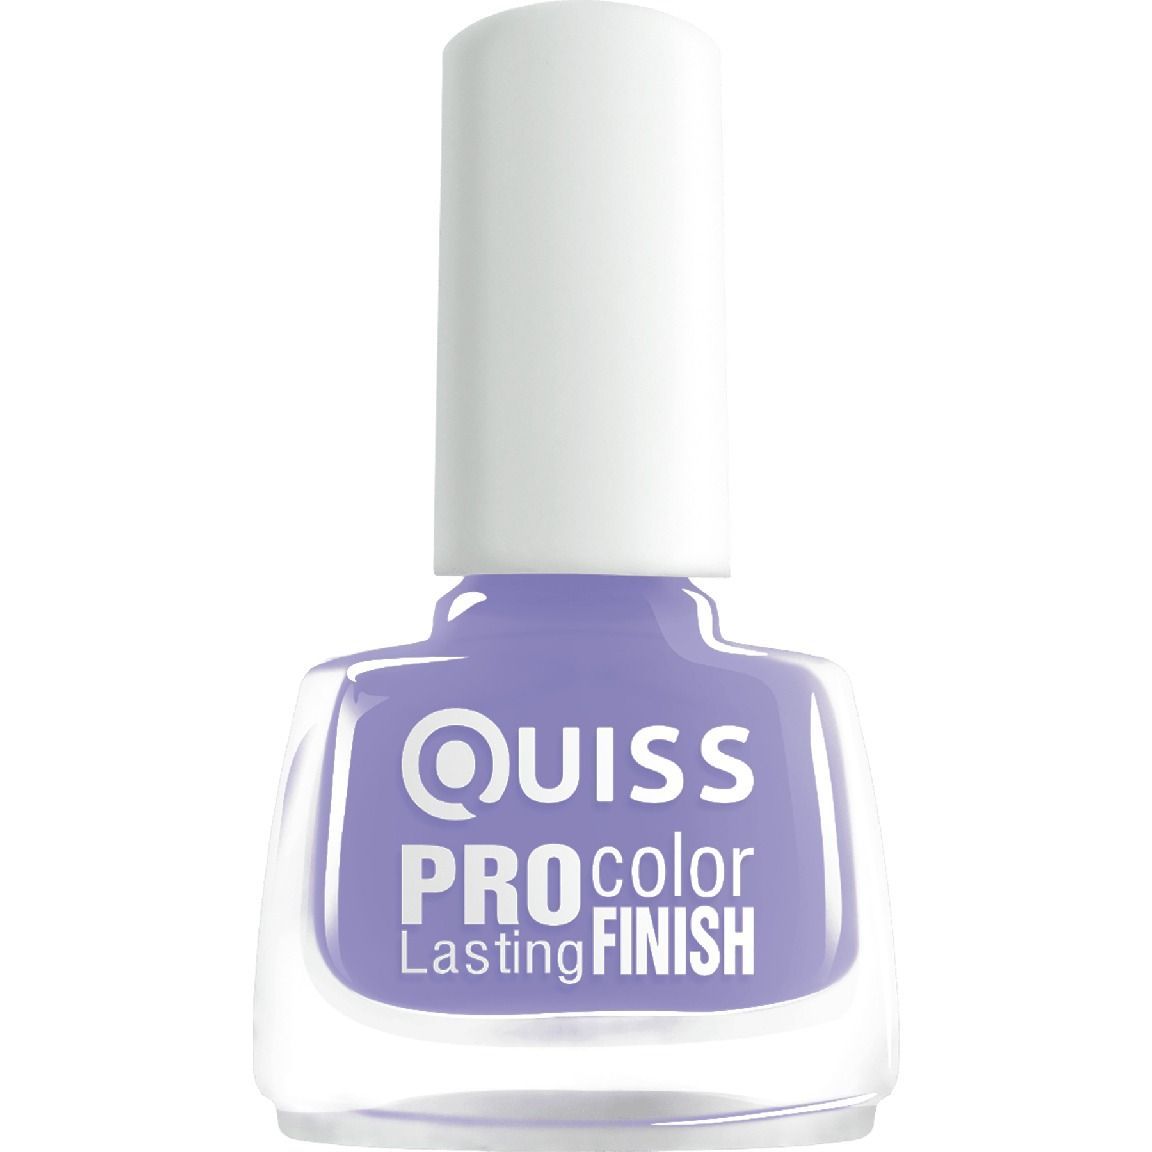 Лак для ногтей Quiss Pro Color Lasting Finish тон 37, 6 мл - фото 1